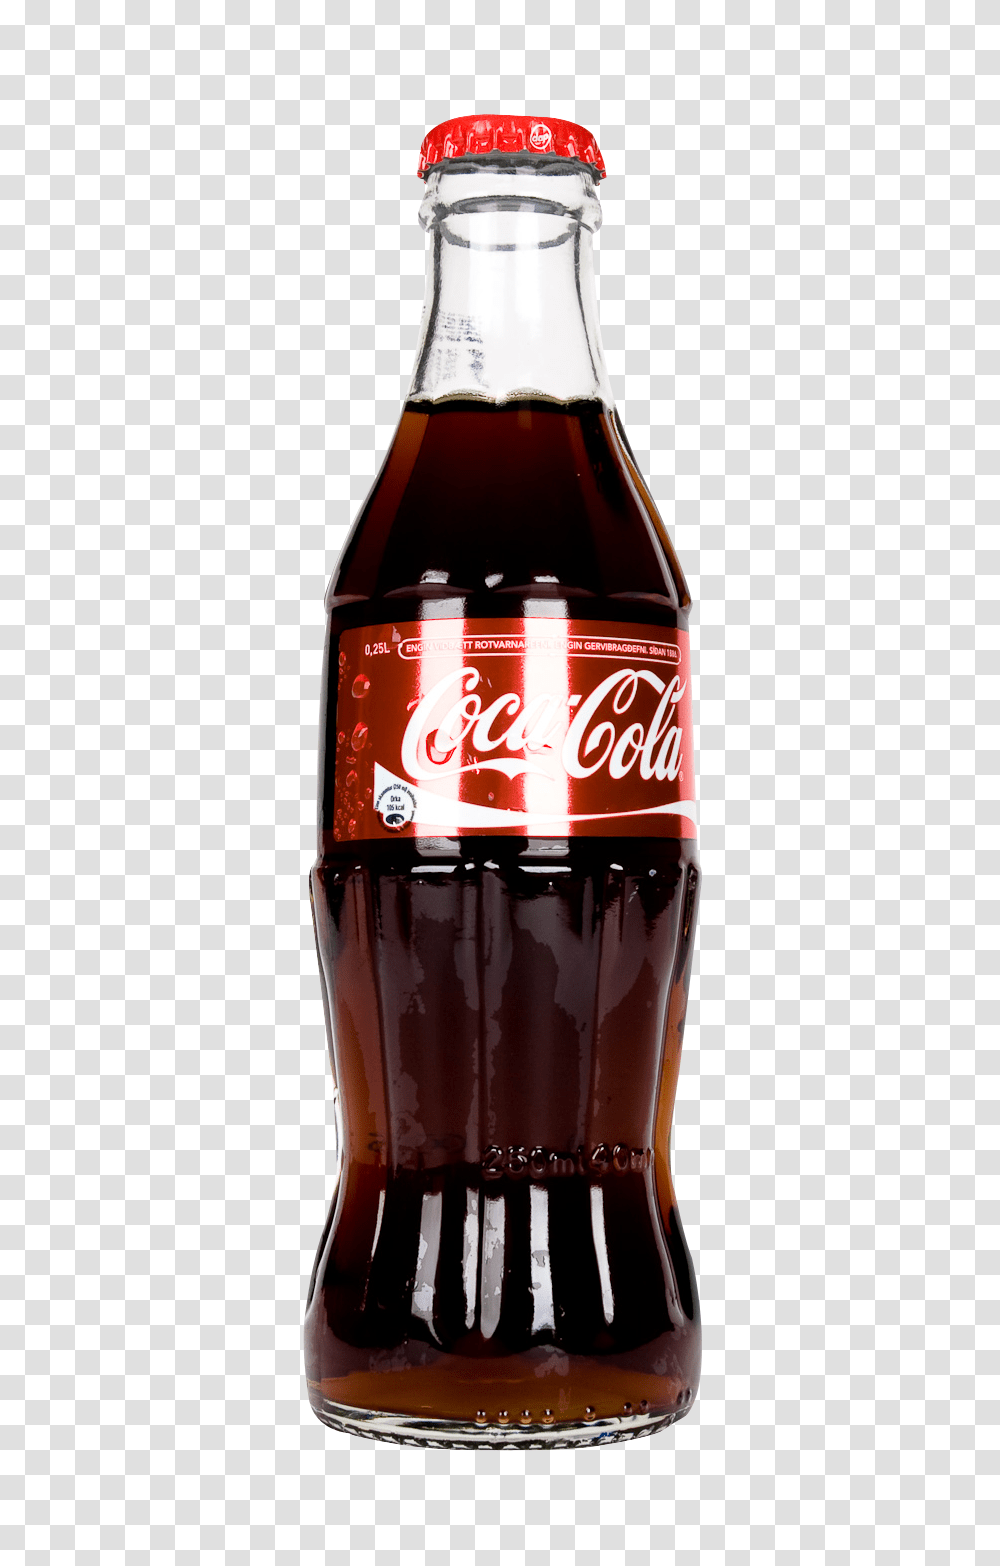 Coca Cola Bottle Image, Drink, Coke, Beverage, Soda Transparent Png ...